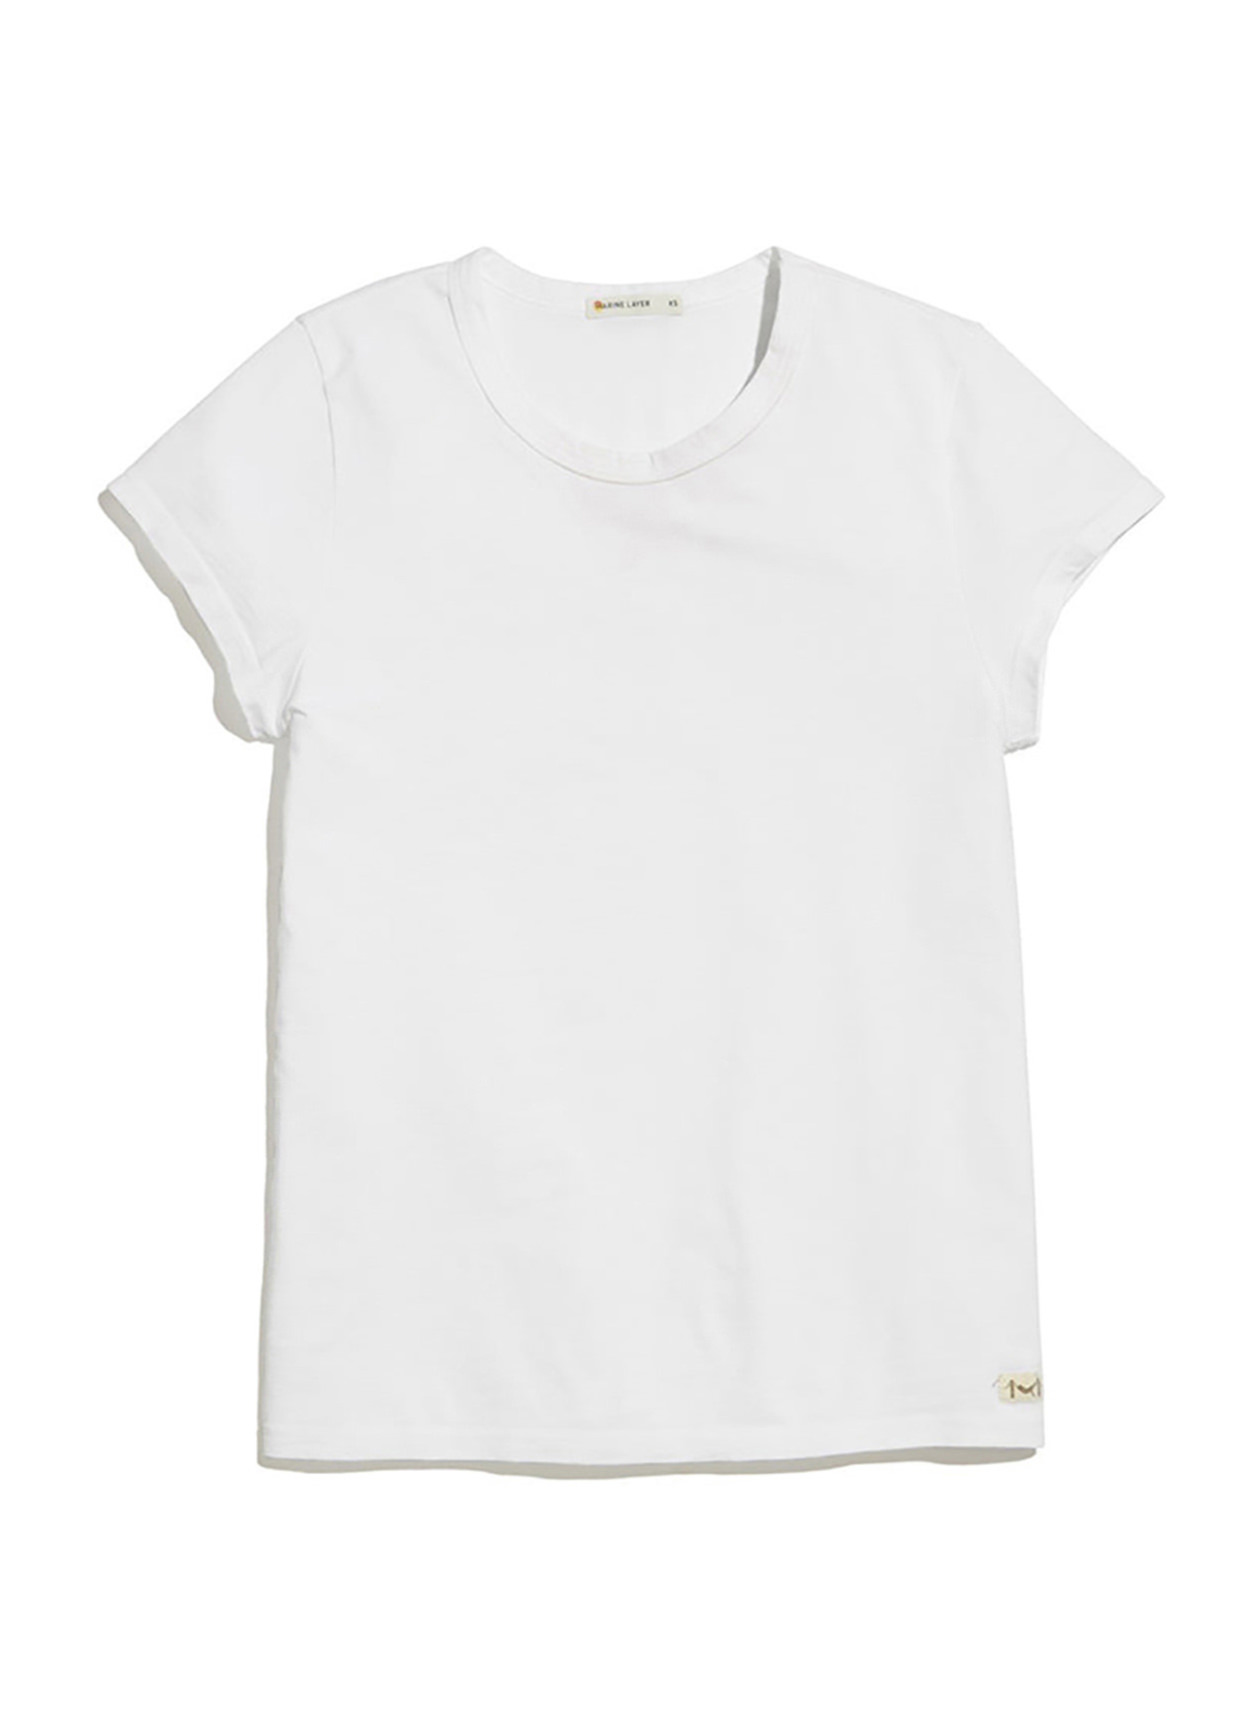 Marine Layer Women's White Signature Classic Bound T-Shirt